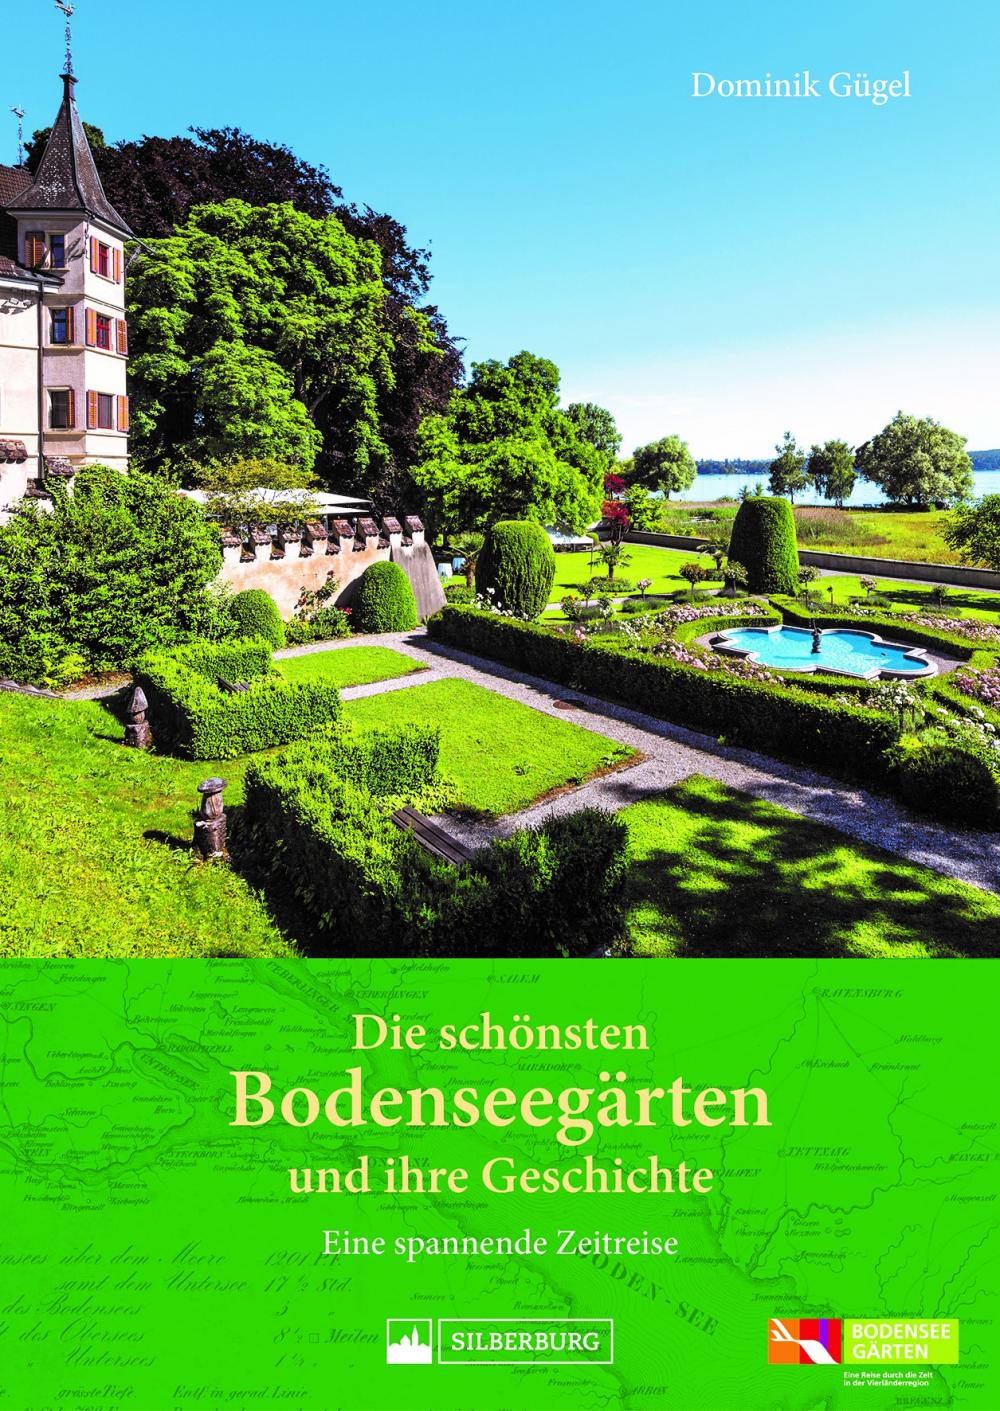 Buch zum Gartenjahr am Bodensee